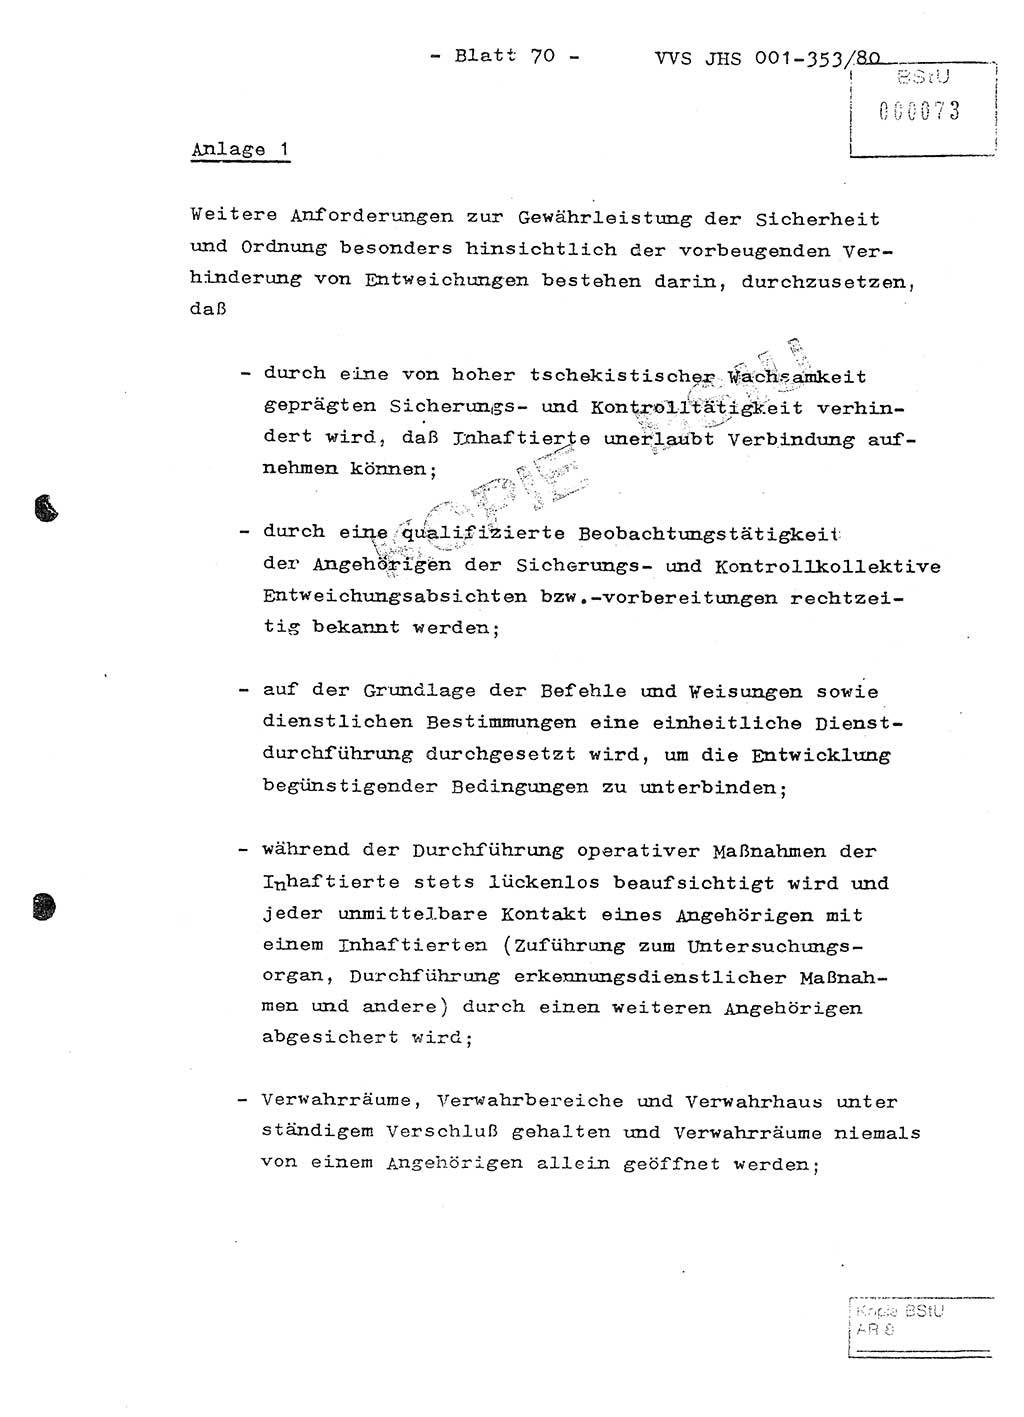 Diplomarbeit Hauptmann Joachim Klaumünzner (Abt. ⅩⅣ), Ministerium für Staatssicherheit (MfS) [Deutsche Demokratische Republik (DDR)], Juristische Hochschule (JHS), Vertrauliche Verschlußsache (VVS) o001-353/80, Potsdam 1980, Blatt 70 (Dipl.-Arb. MfS DDR JHS VVS o001-353/80 1980, Bl. 70)